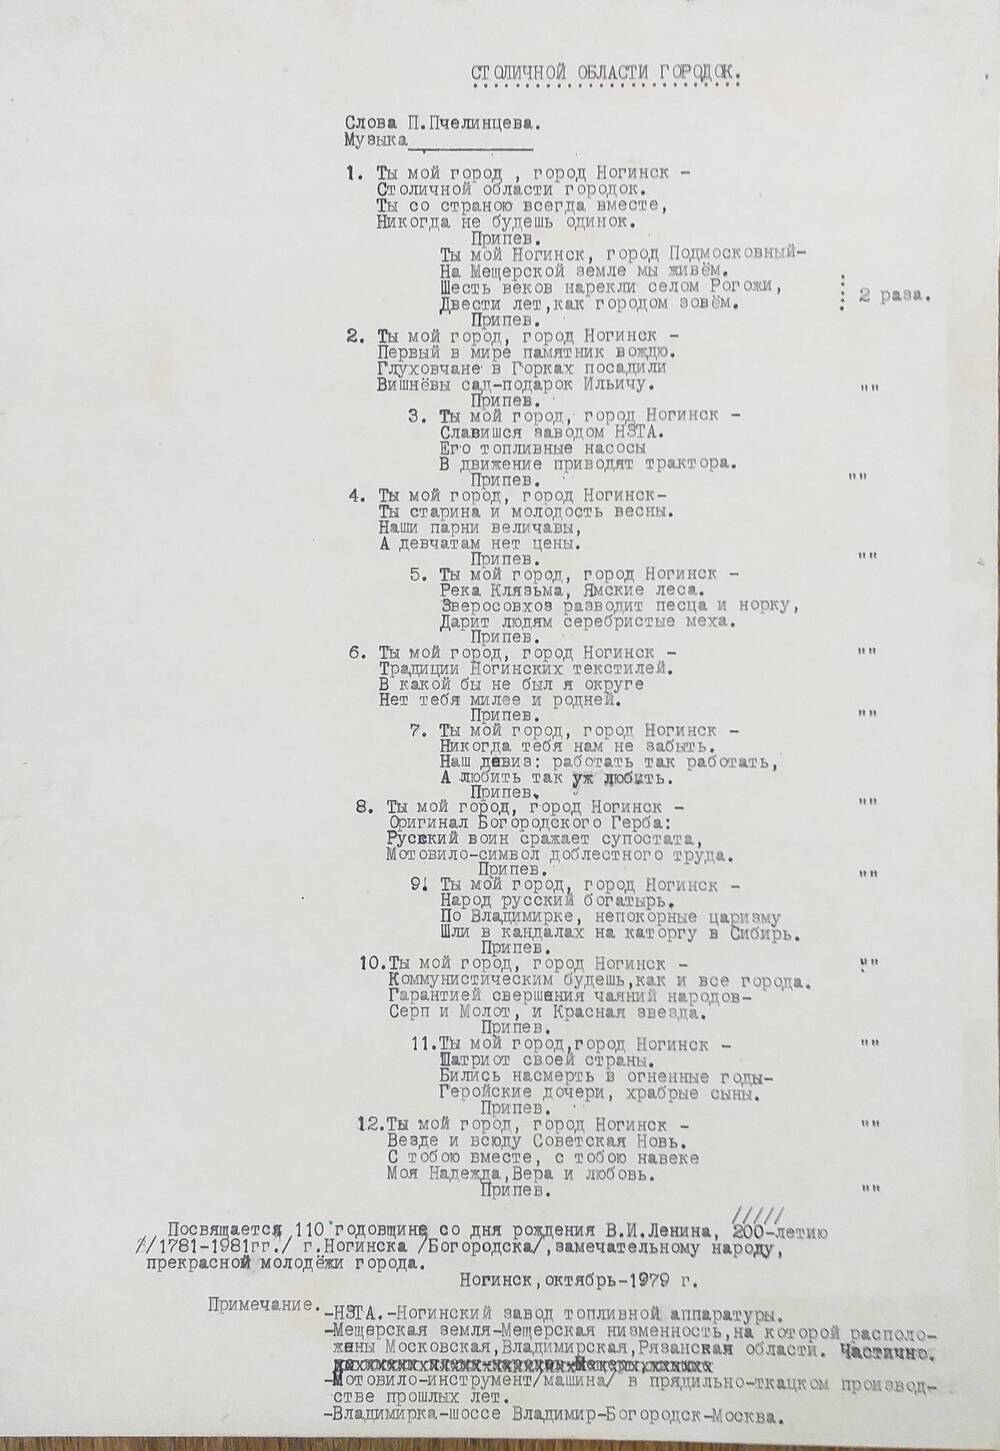 Рукопись стихотворения Пчелинцева П. Столичной области городок, октябрь 1979 года.